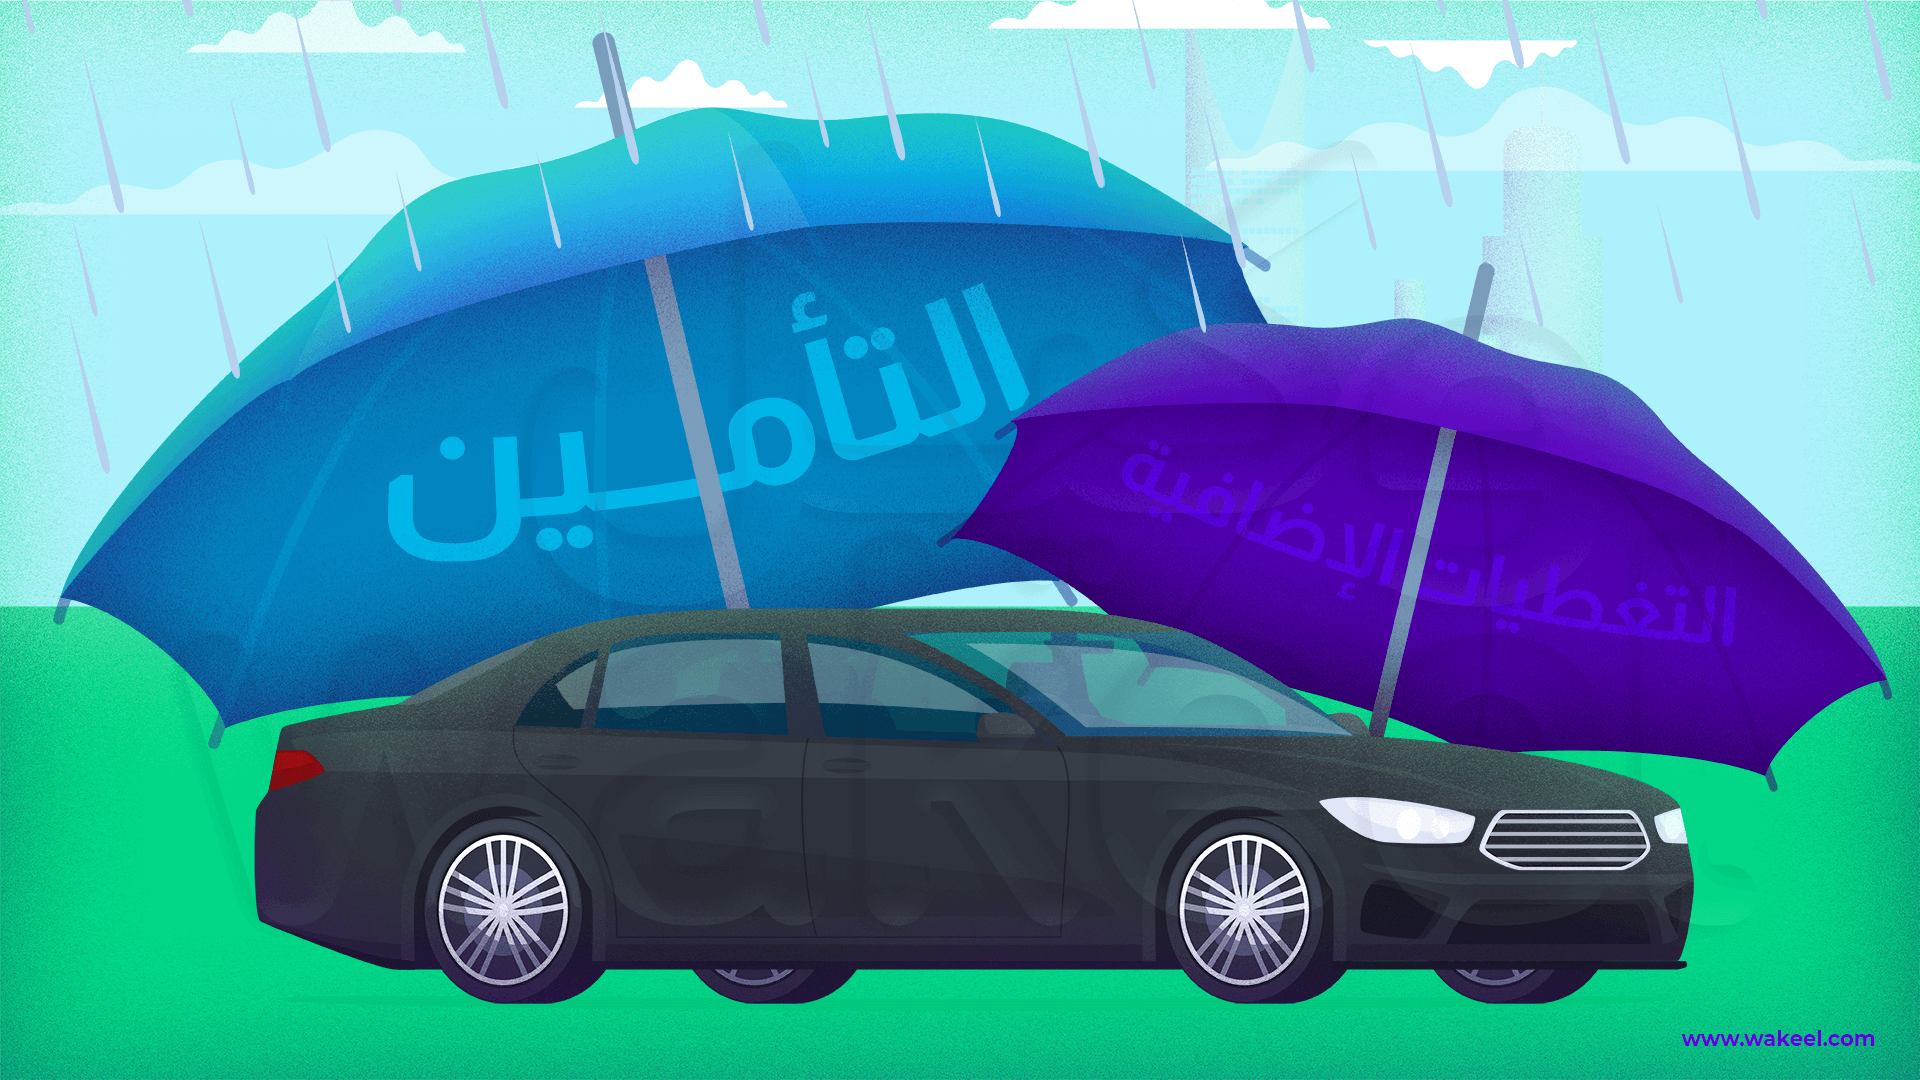 سيارة متوقفة تحت مظلة تأمينية، ترمز إلى التغطية الشاملة والحماية على الطريق